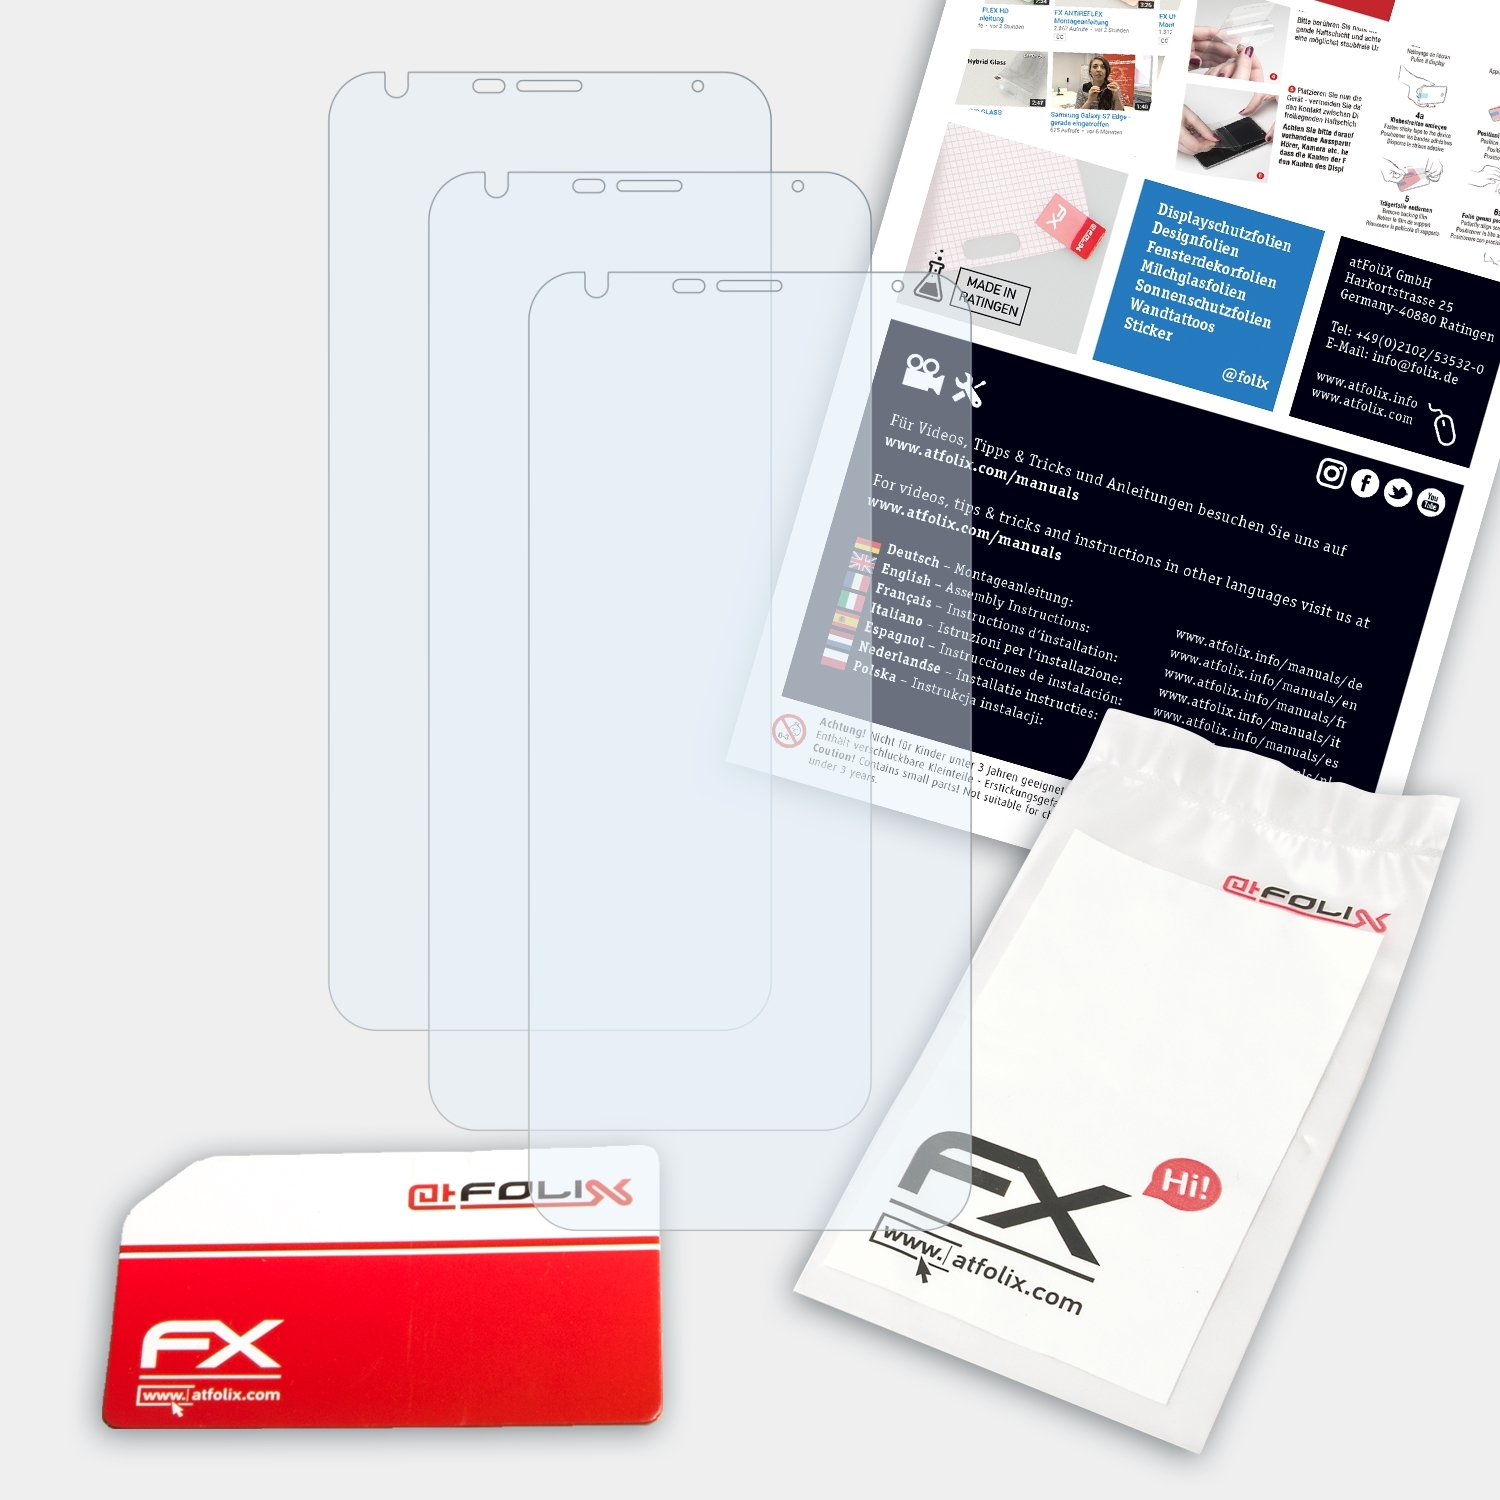 LG 5) ATFOLIX FX-Clear 3x Stylo Displayschutz(für